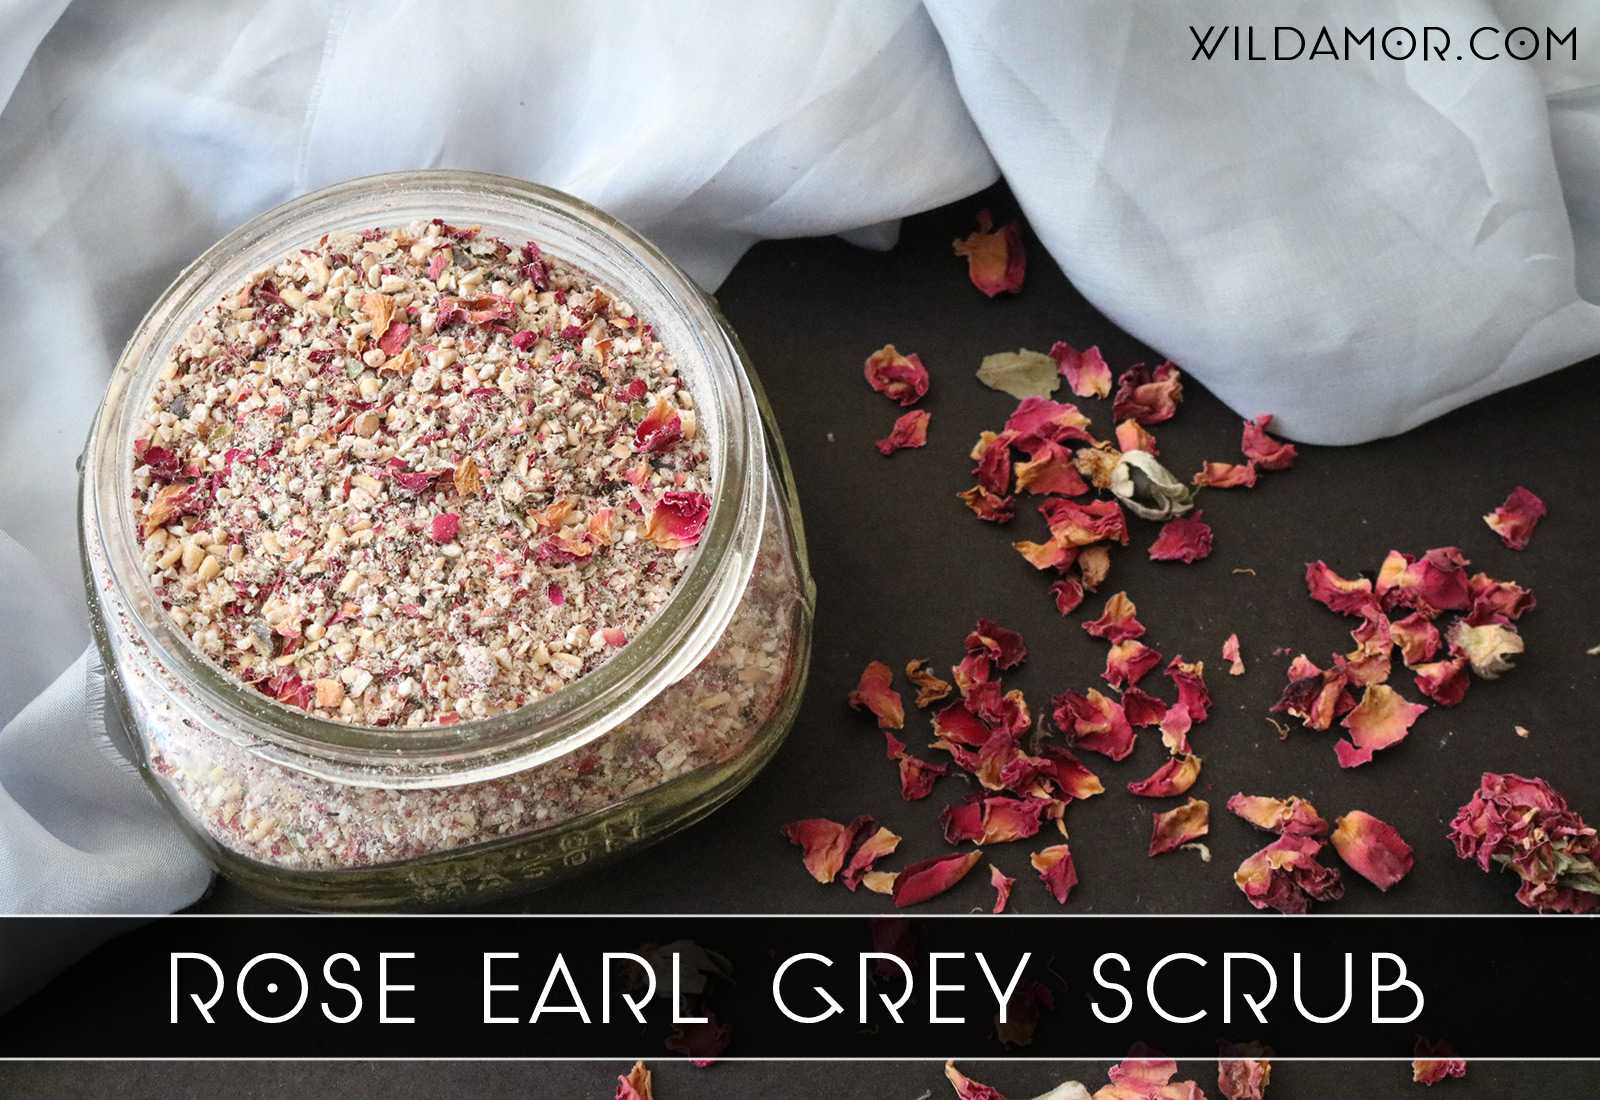 Rose Earl Grey Scrub